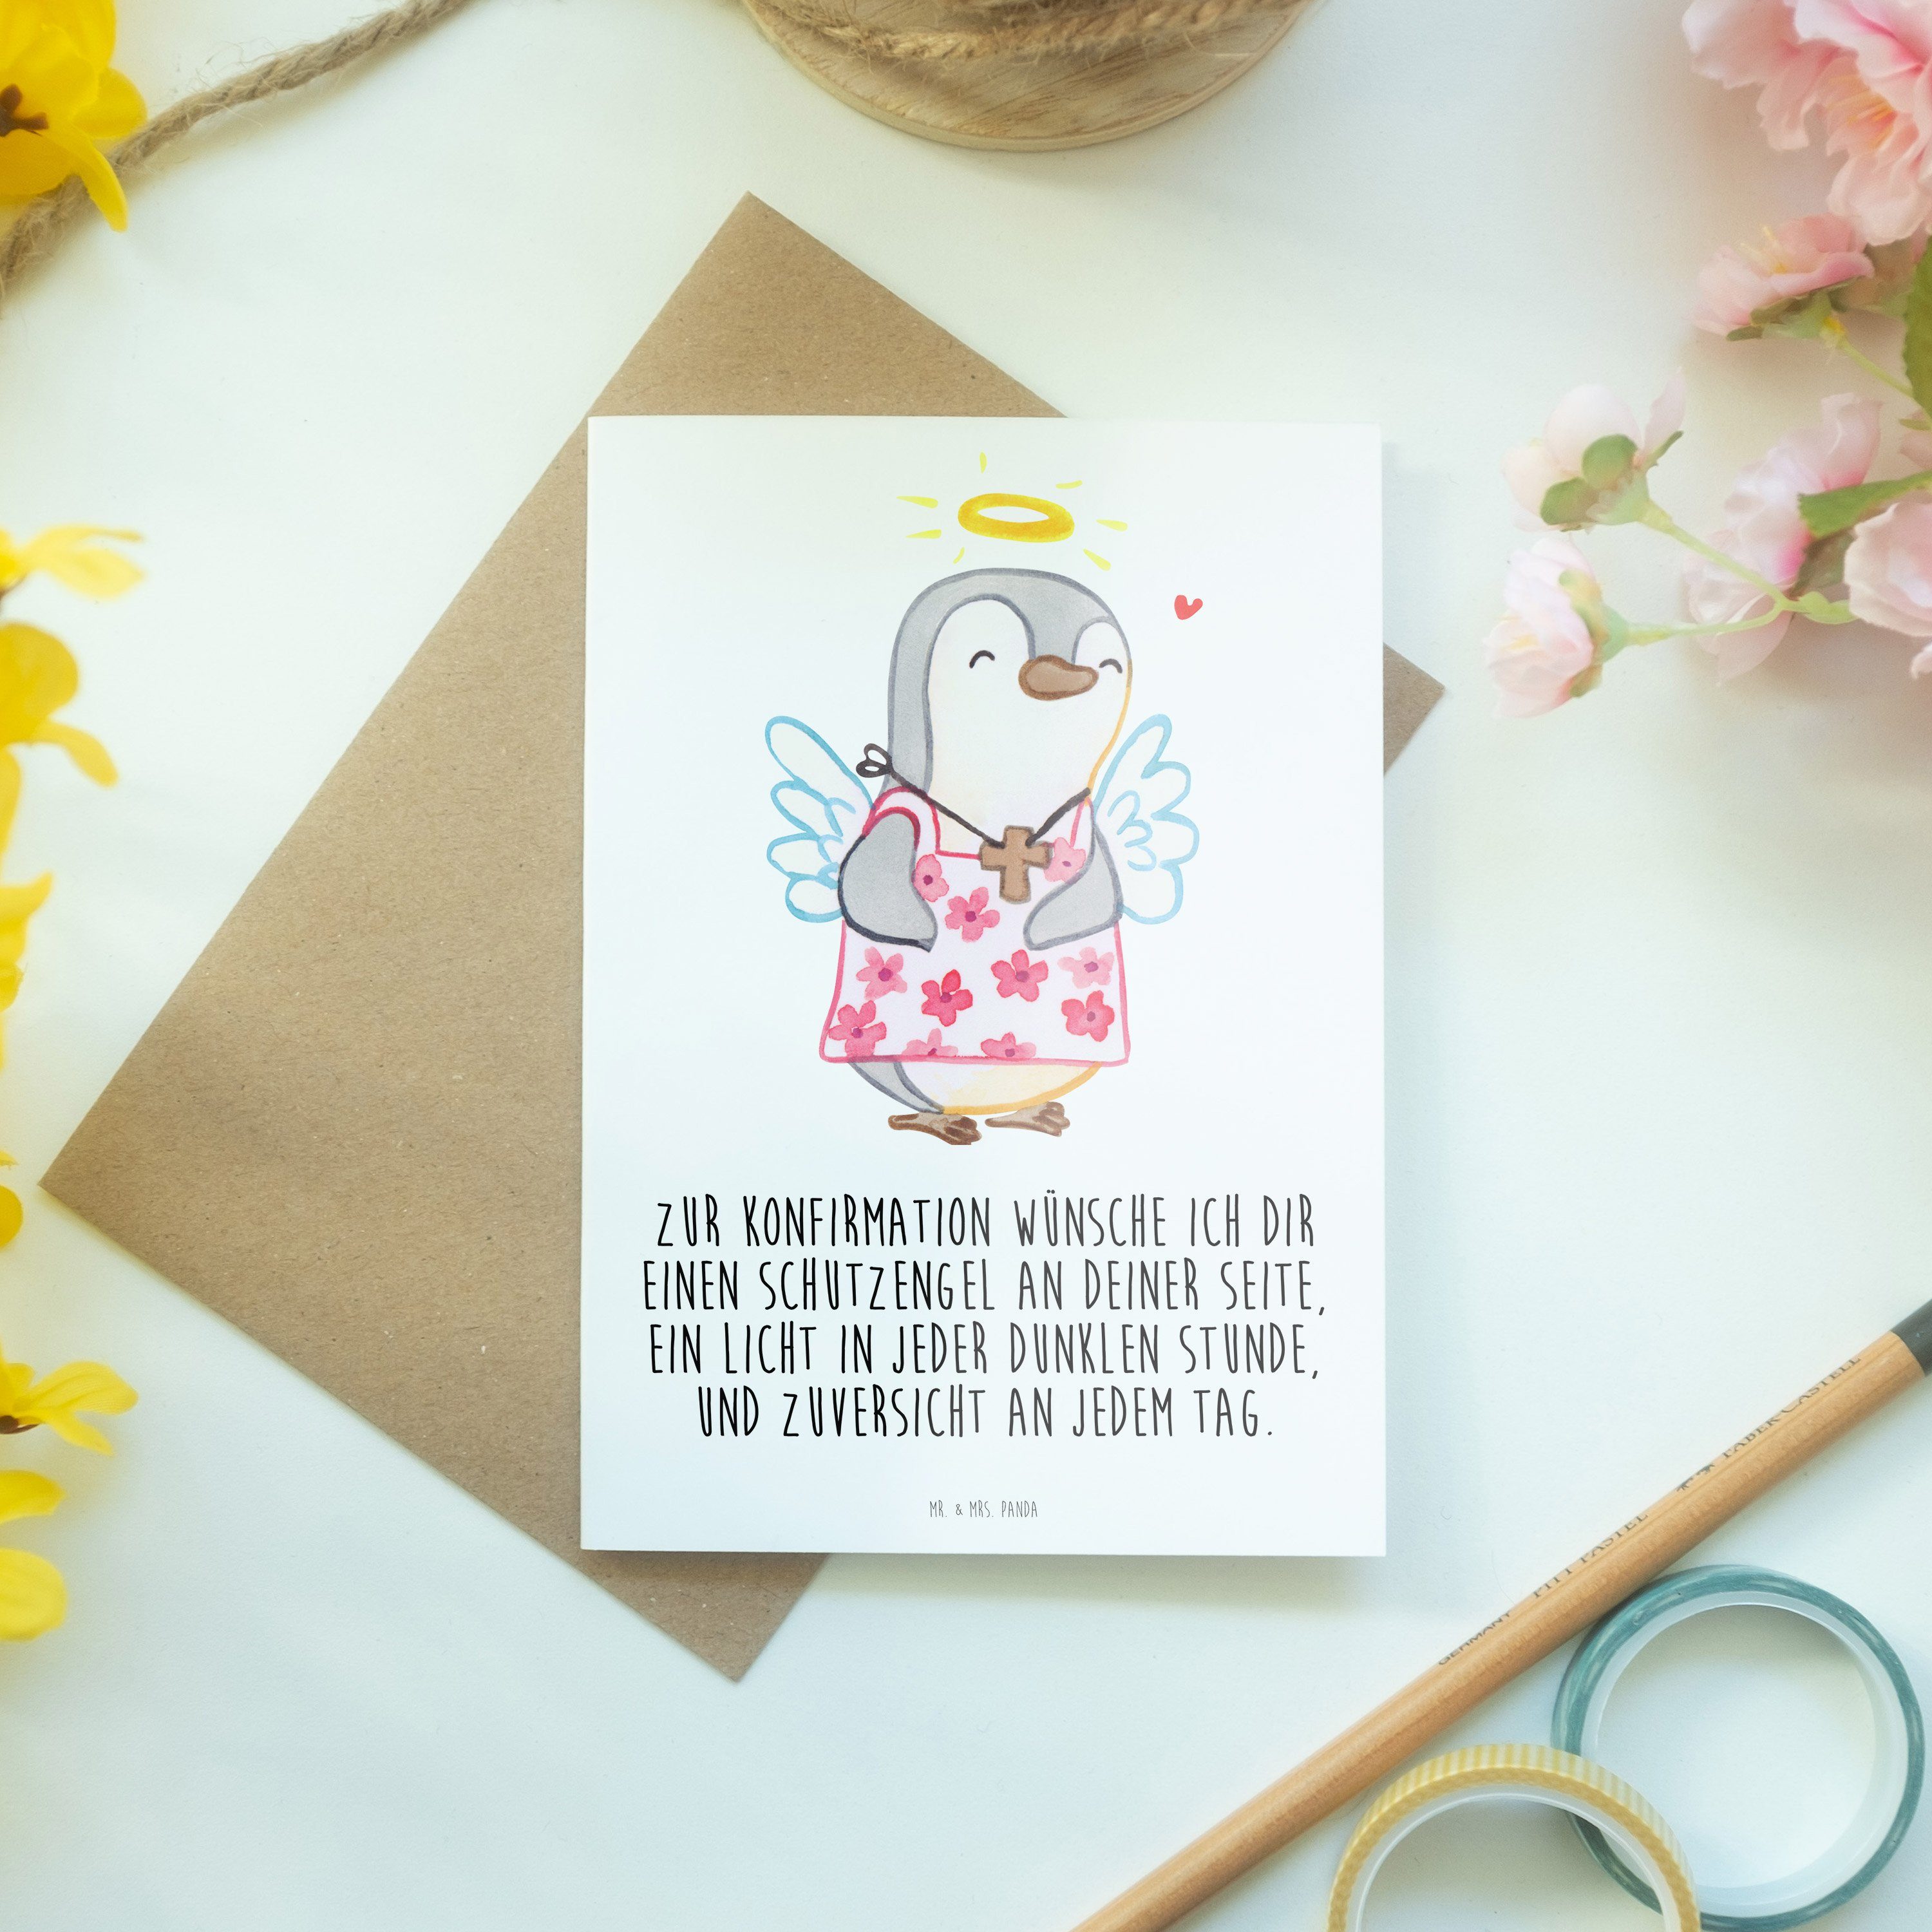 & Grußkarte Glückwunschkarte Panda Mr. Mrs. Vertrauen, - Konfirmation - Pinguin Geschenk, Weiß